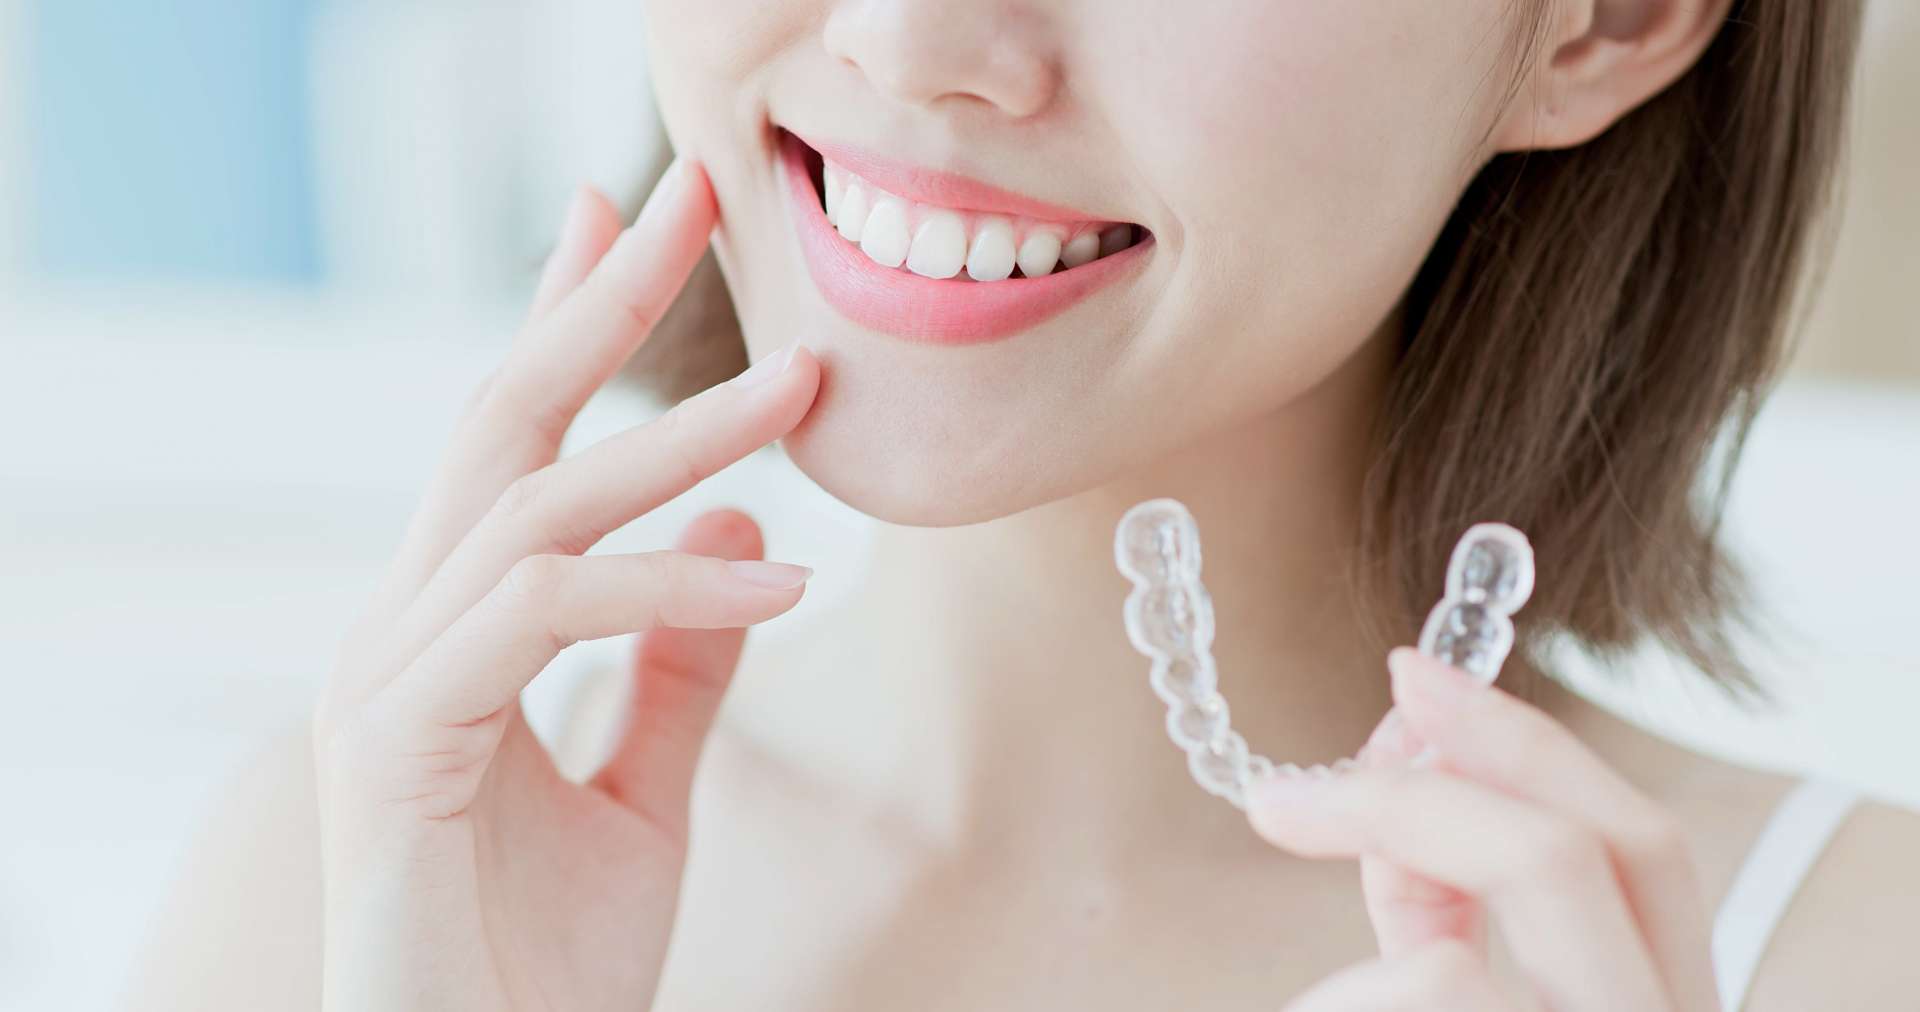 笑顔の人生のために宮崎台で信頼される矯正歯科を目指します